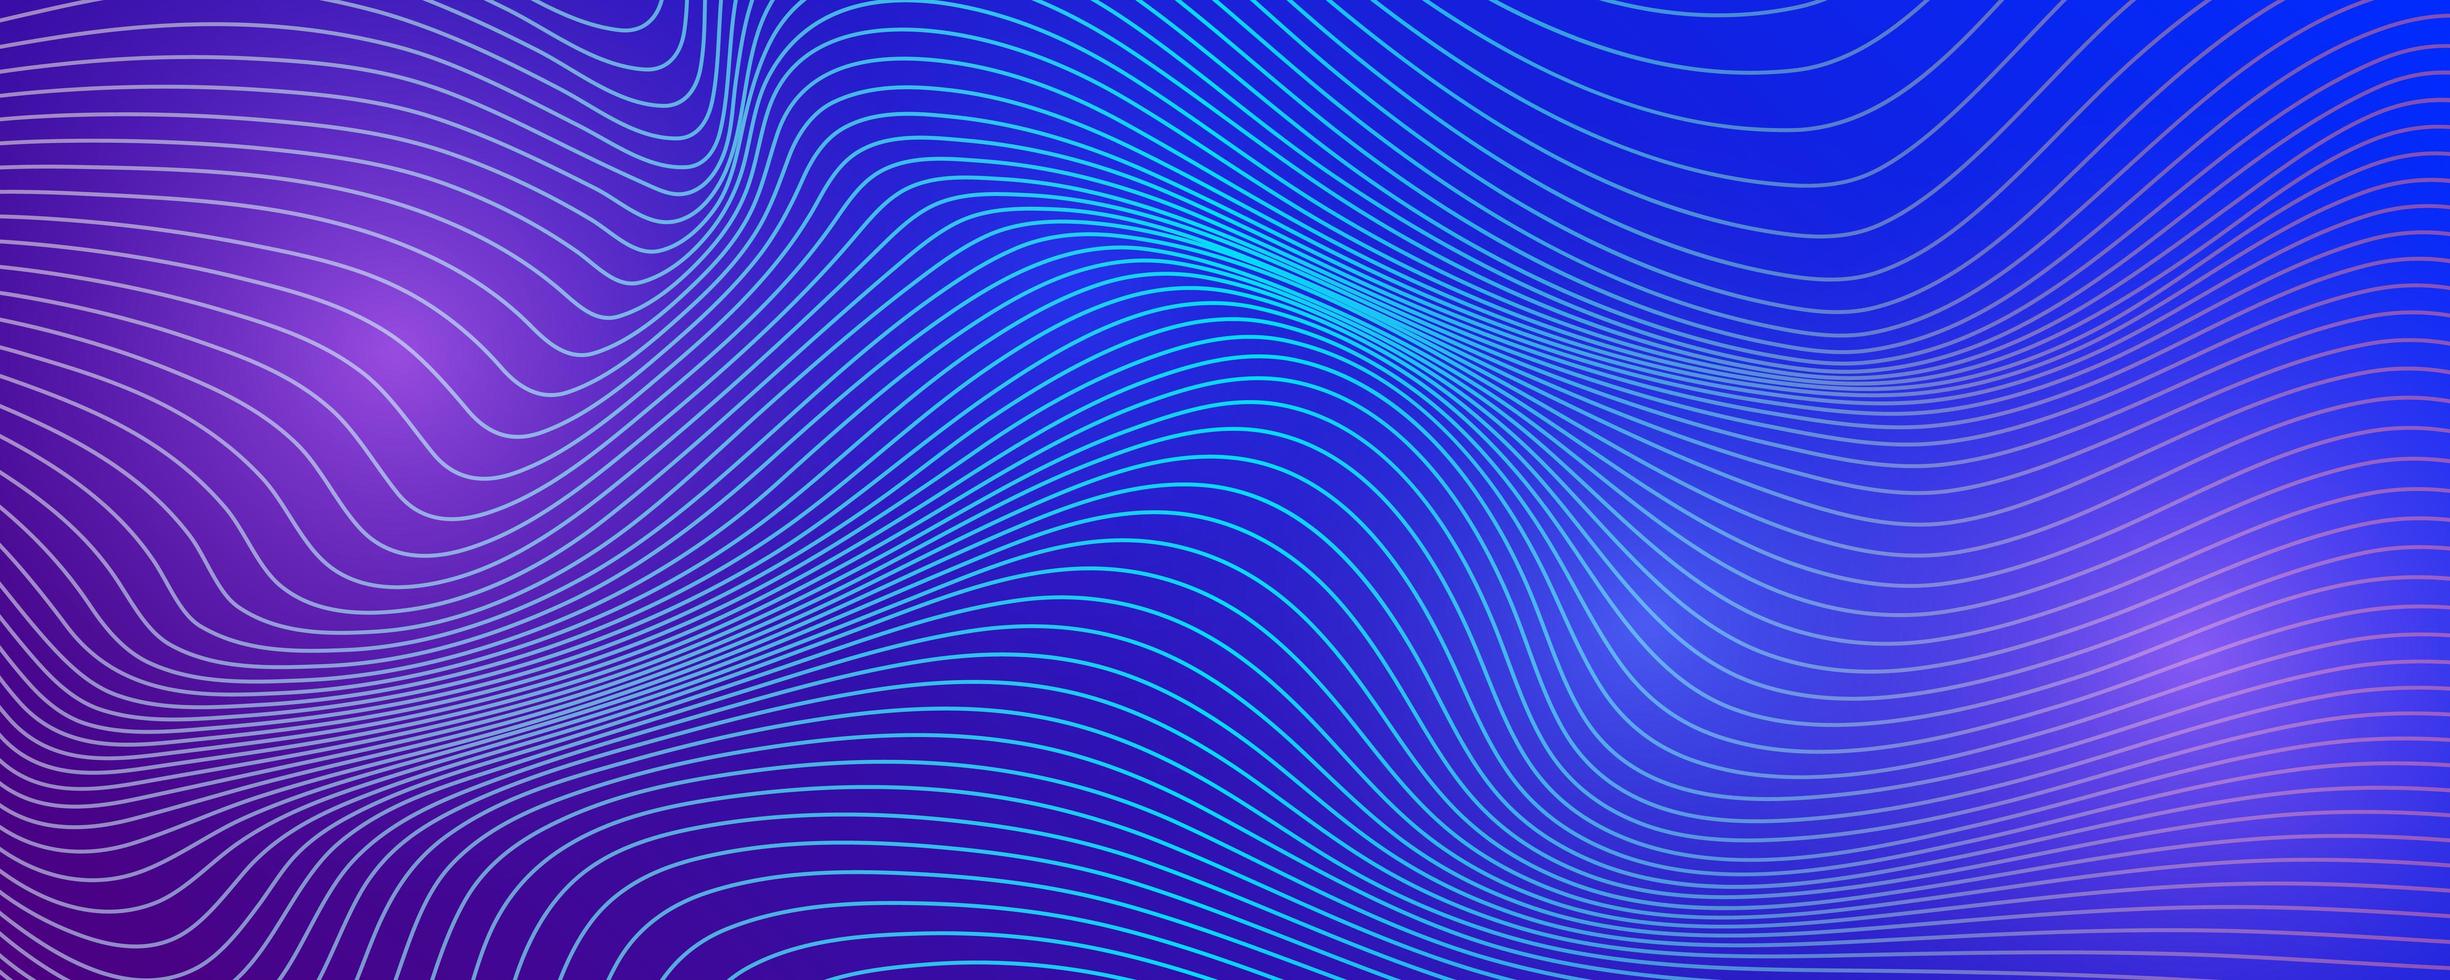 technischer Hintergrund mit abstrakten Wellenlinien. vektor